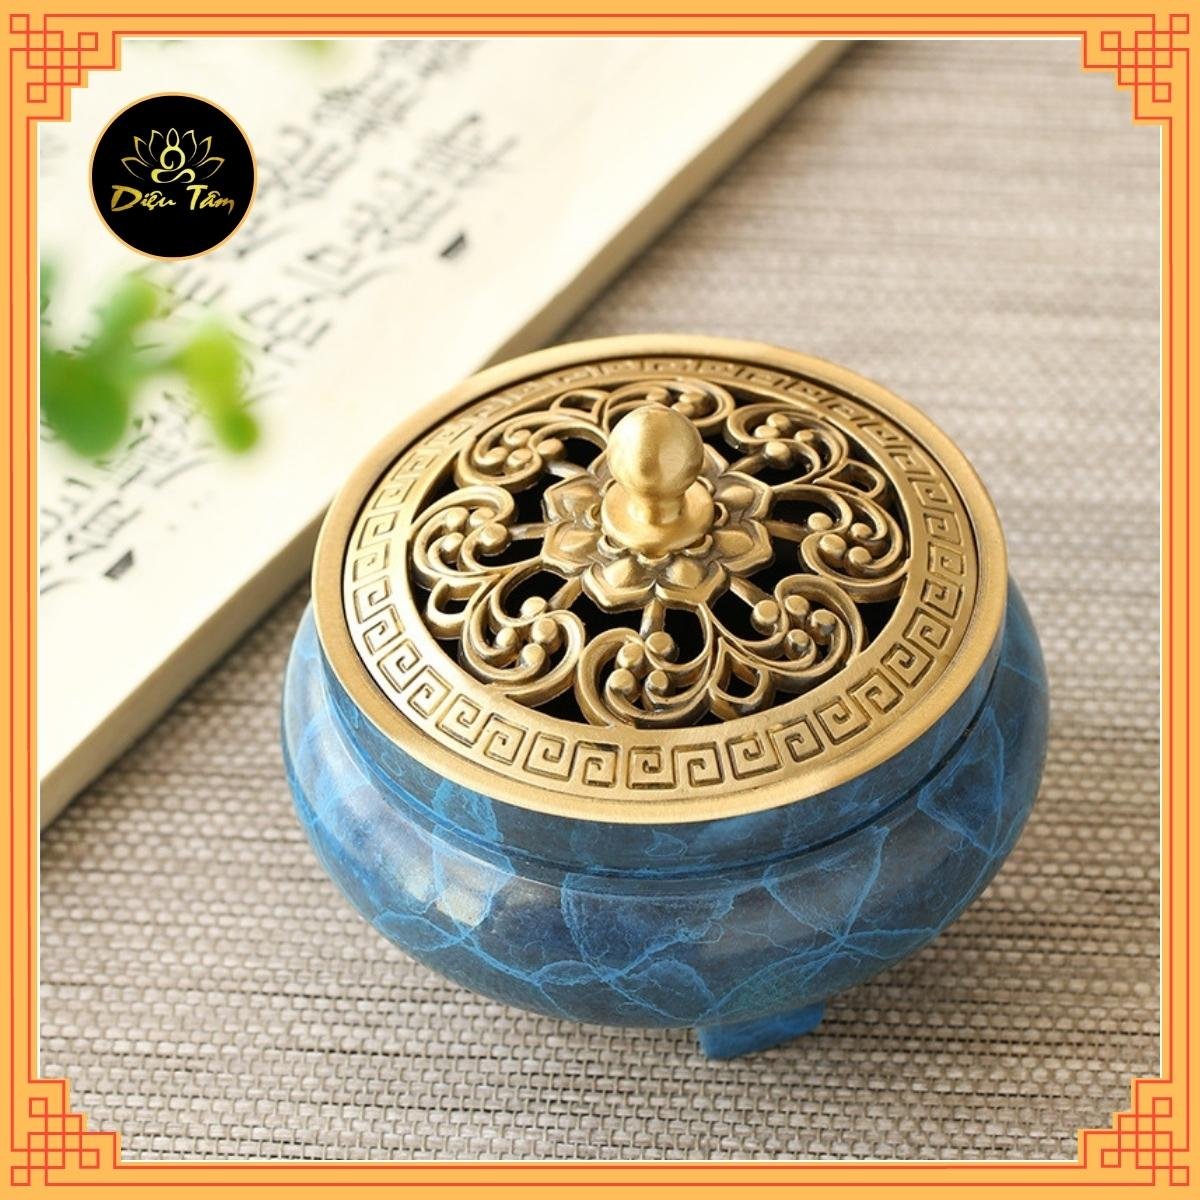 Bộ dụng cụ xông trầm hương nhiều món bằng đồng nguyên chất sơn xanh tặng bột Nhật dẫn lửa và trụ đồng cài nhang vòng